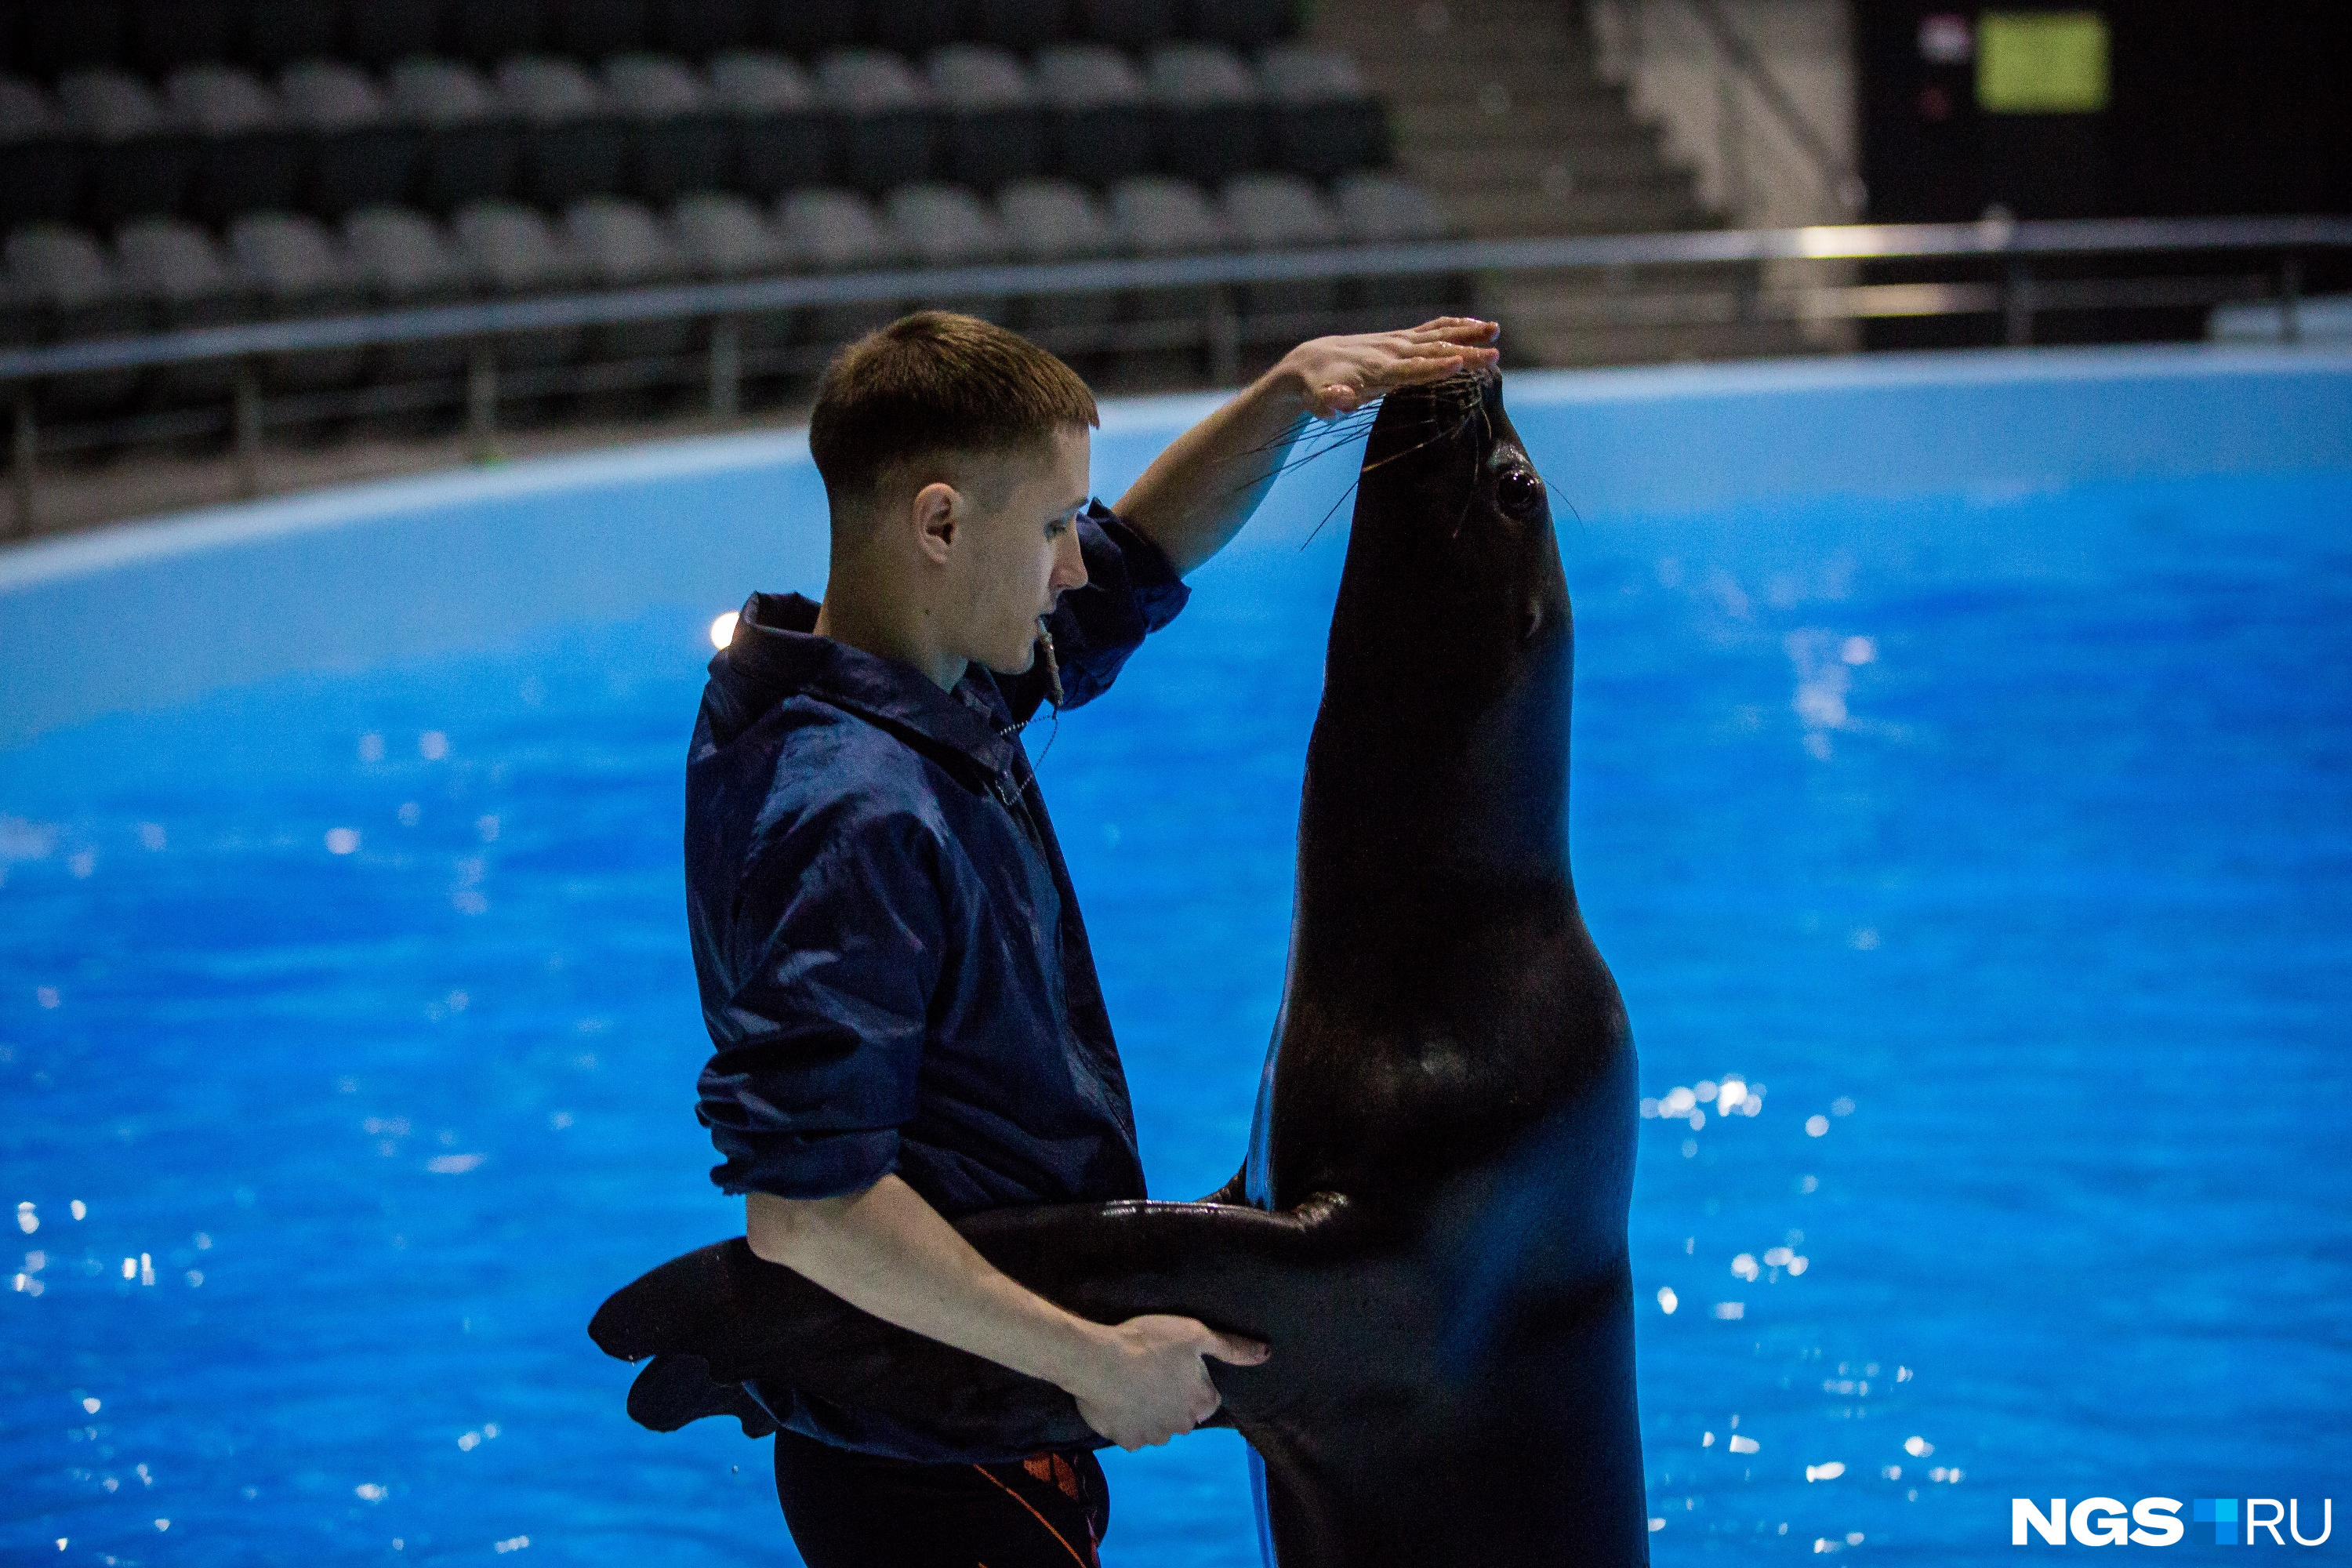 Бывший видеограф Клим Харламов учит танцевать морскую львицу Мэри